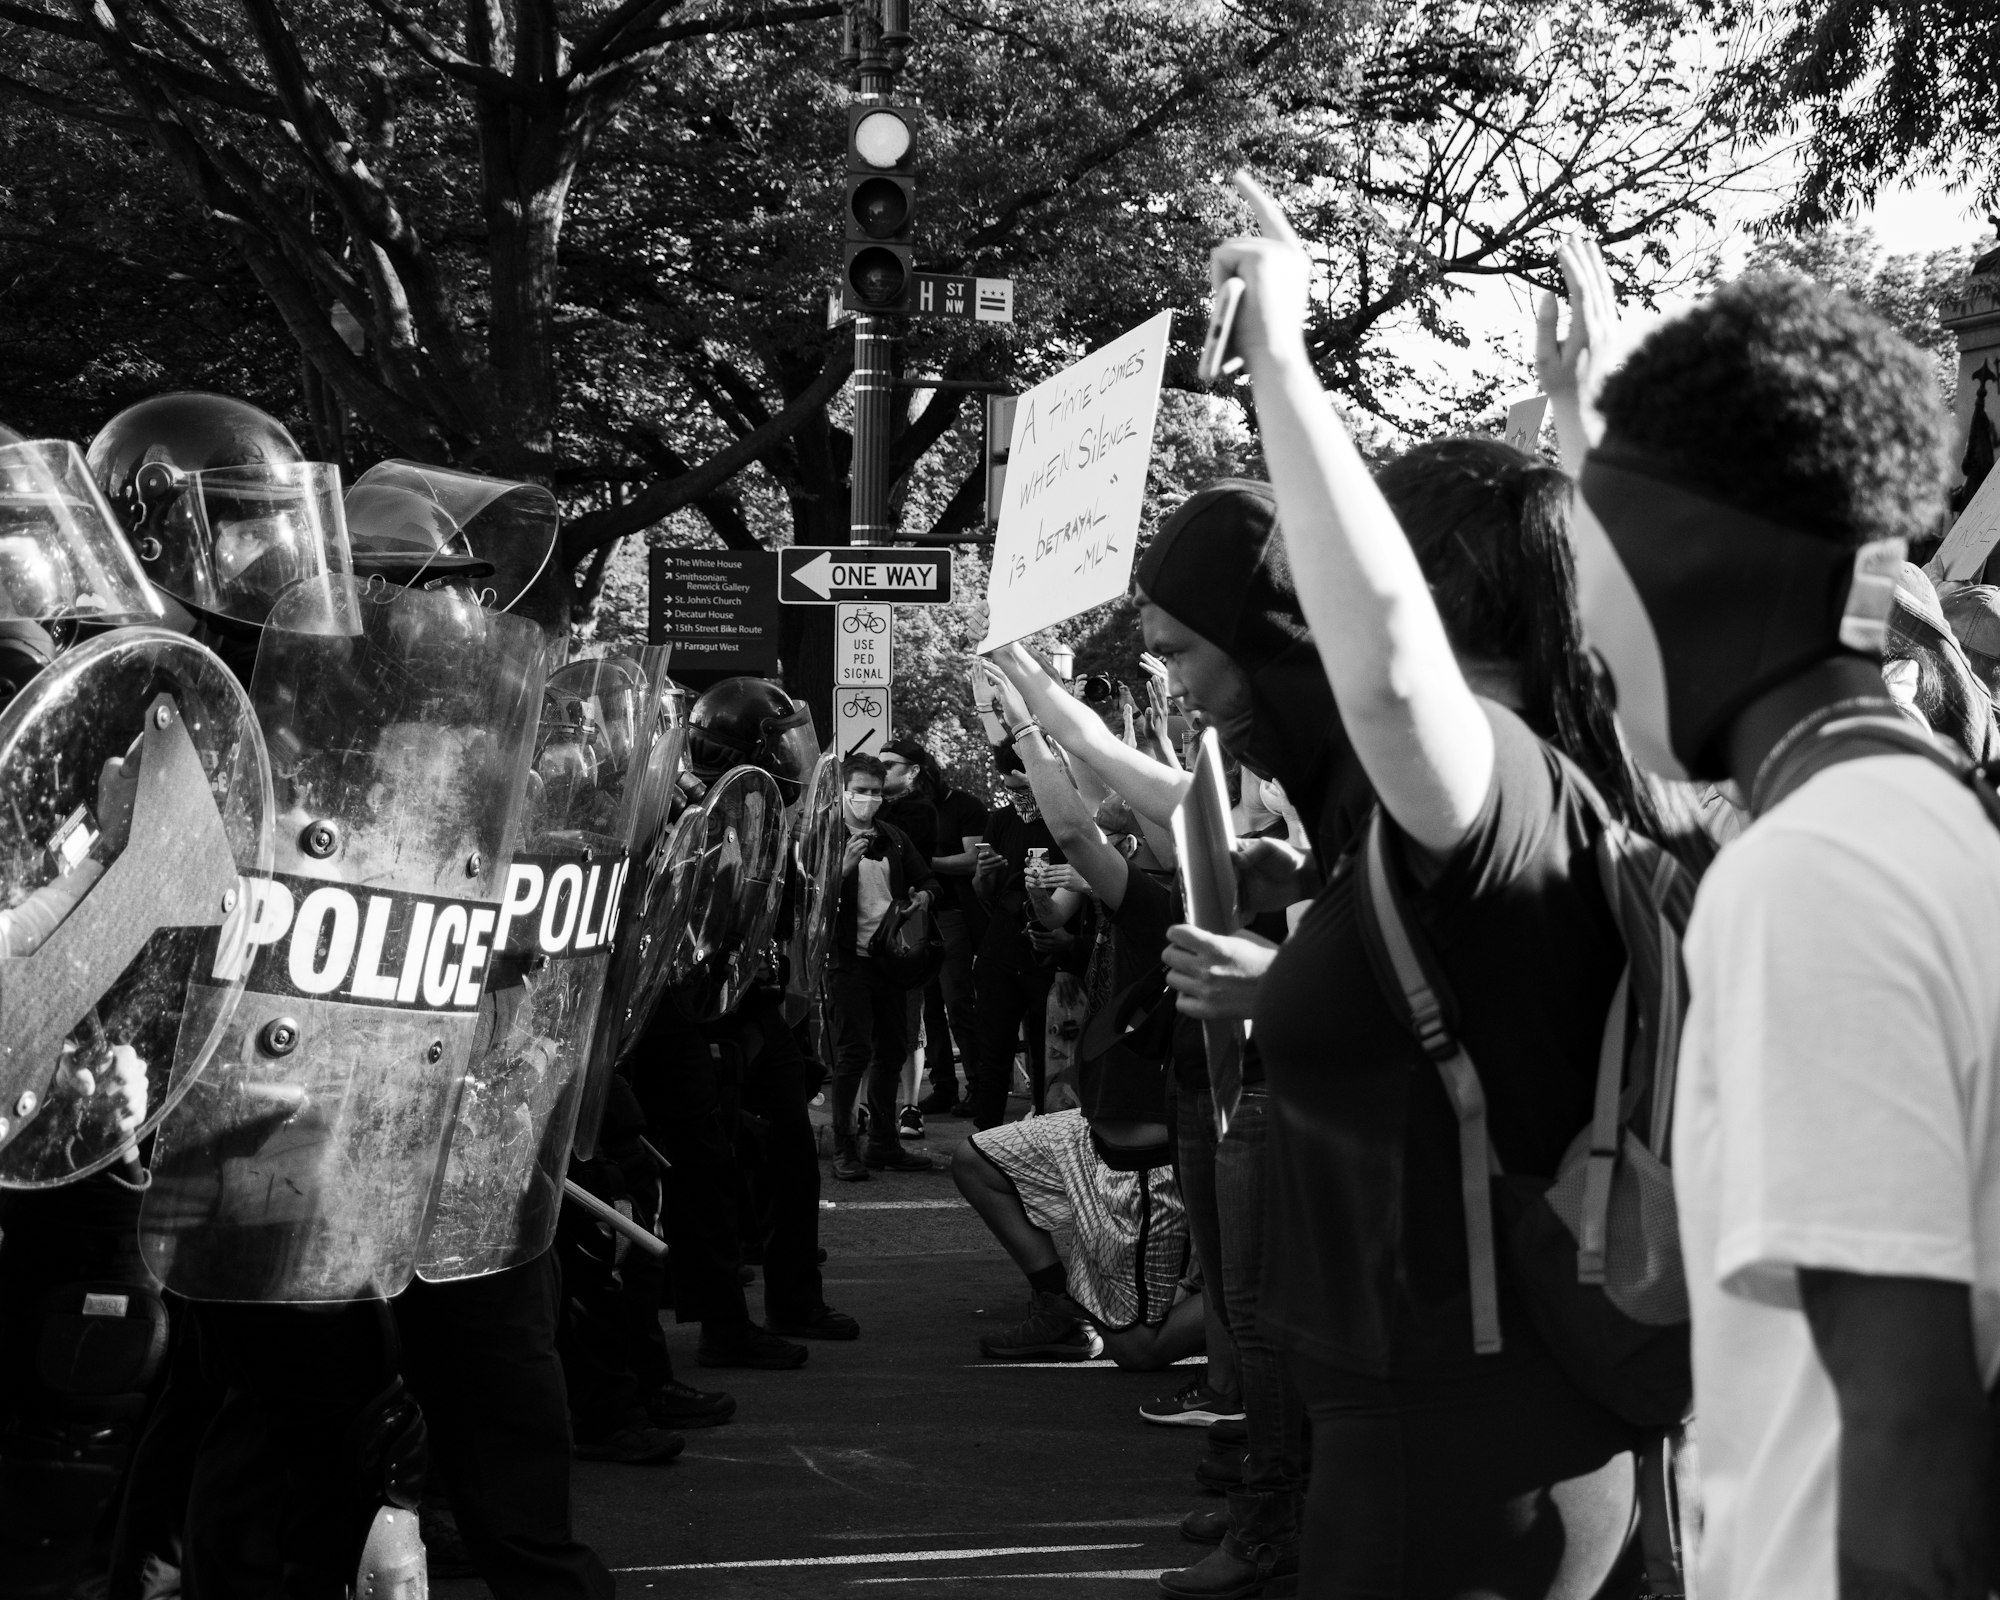 Black Lives Matter Protest in DC, 6/1/2020. 
(Instagram: @koshuphotography)